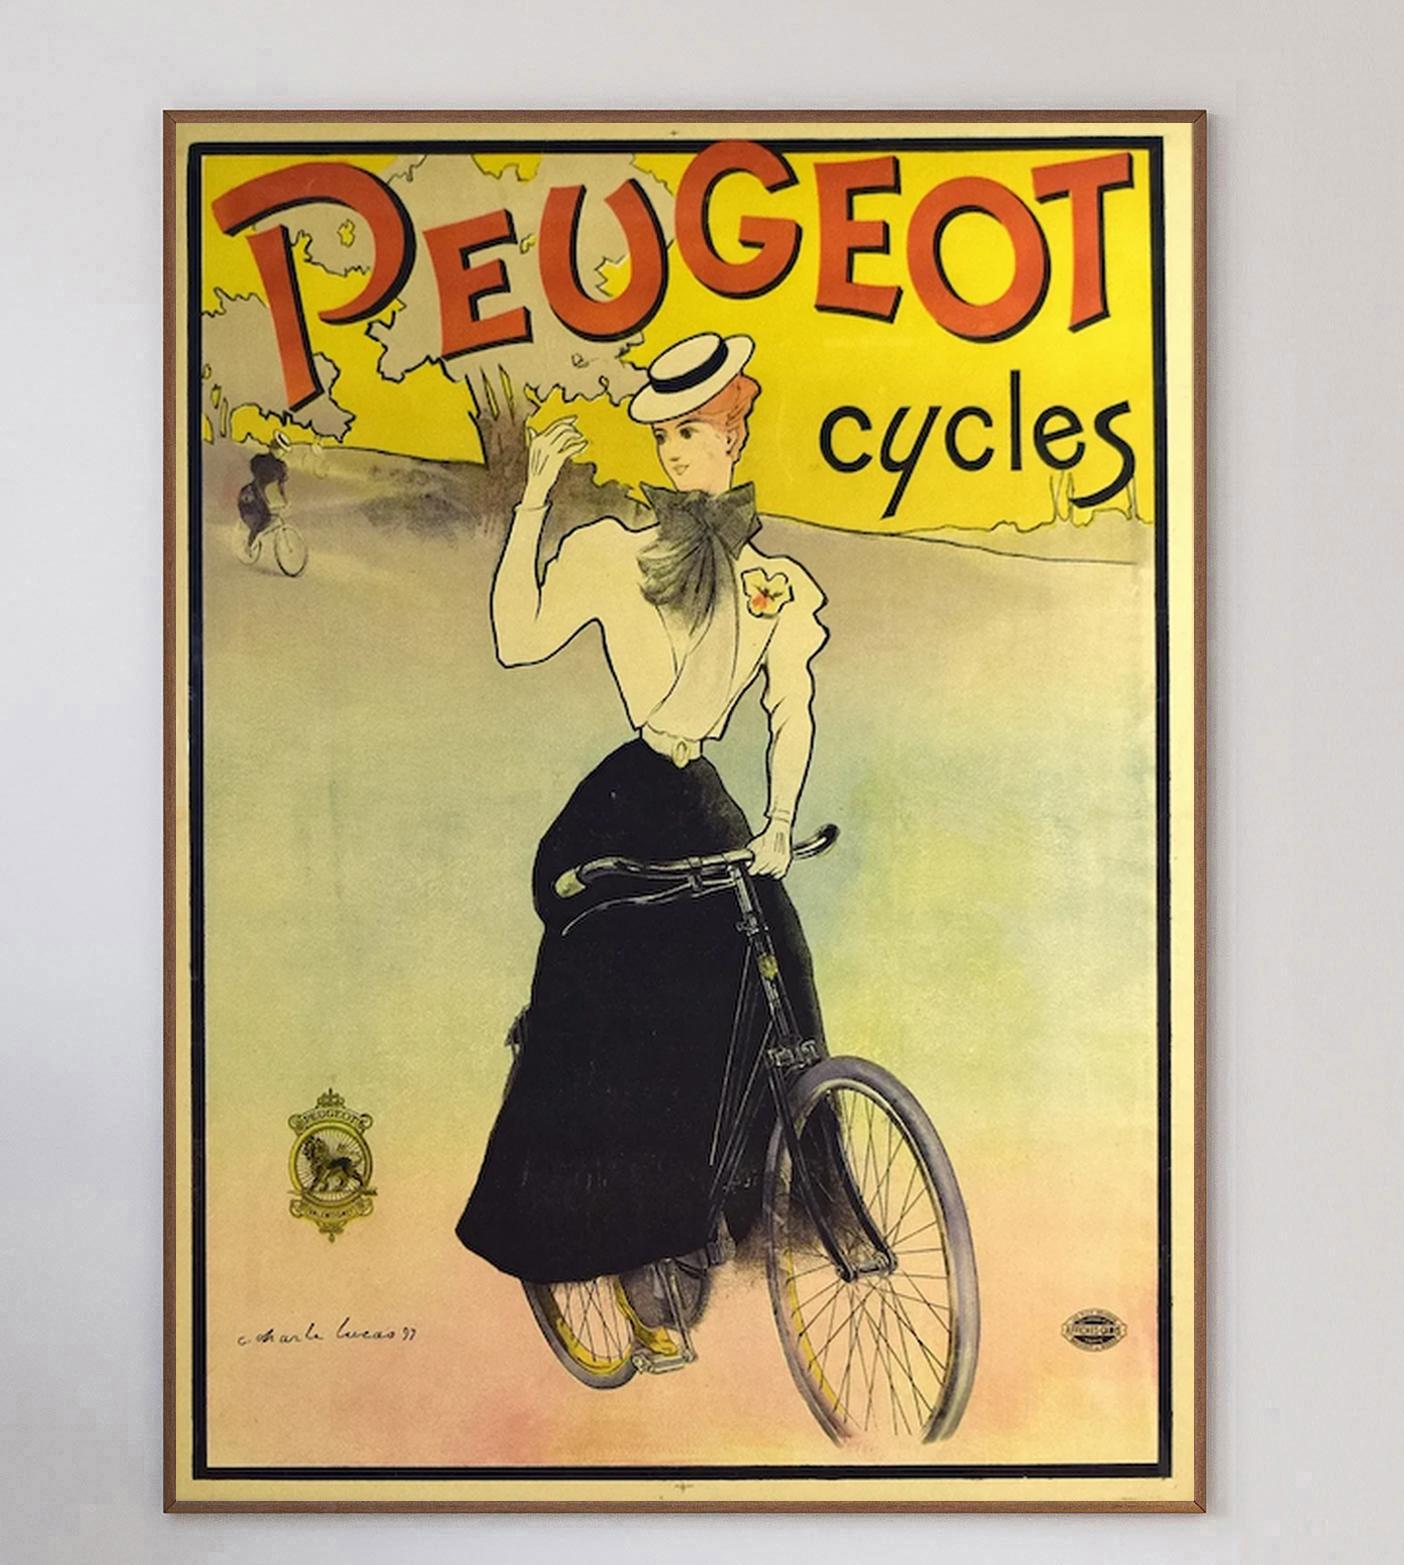 Beeindruckendes Original-Lithografie-Plakat für Peugeot Cycles des Plakatkünstlers Charles Lucas. Ursprünglich 1897 von der Impremerie Camis in Frankreich gedruckt. Das Kunstwerk zeigt eine Frau auf einem Fahrrad mit einem leuchtend gelben und roten